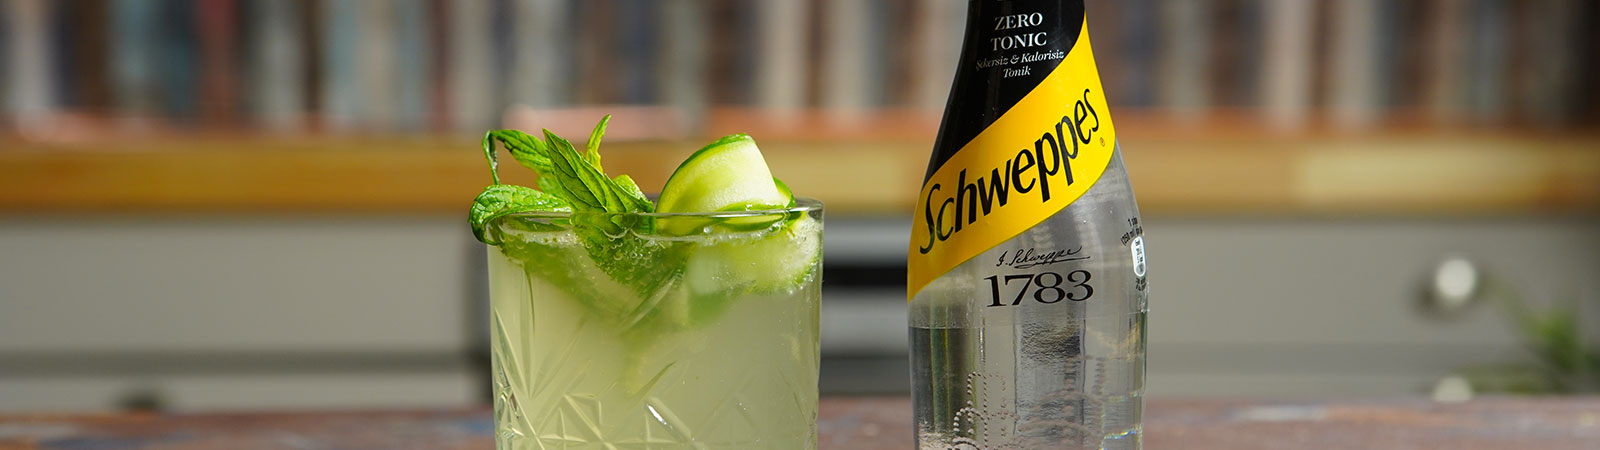 Schweppes Zero Tonic ile Mocktail